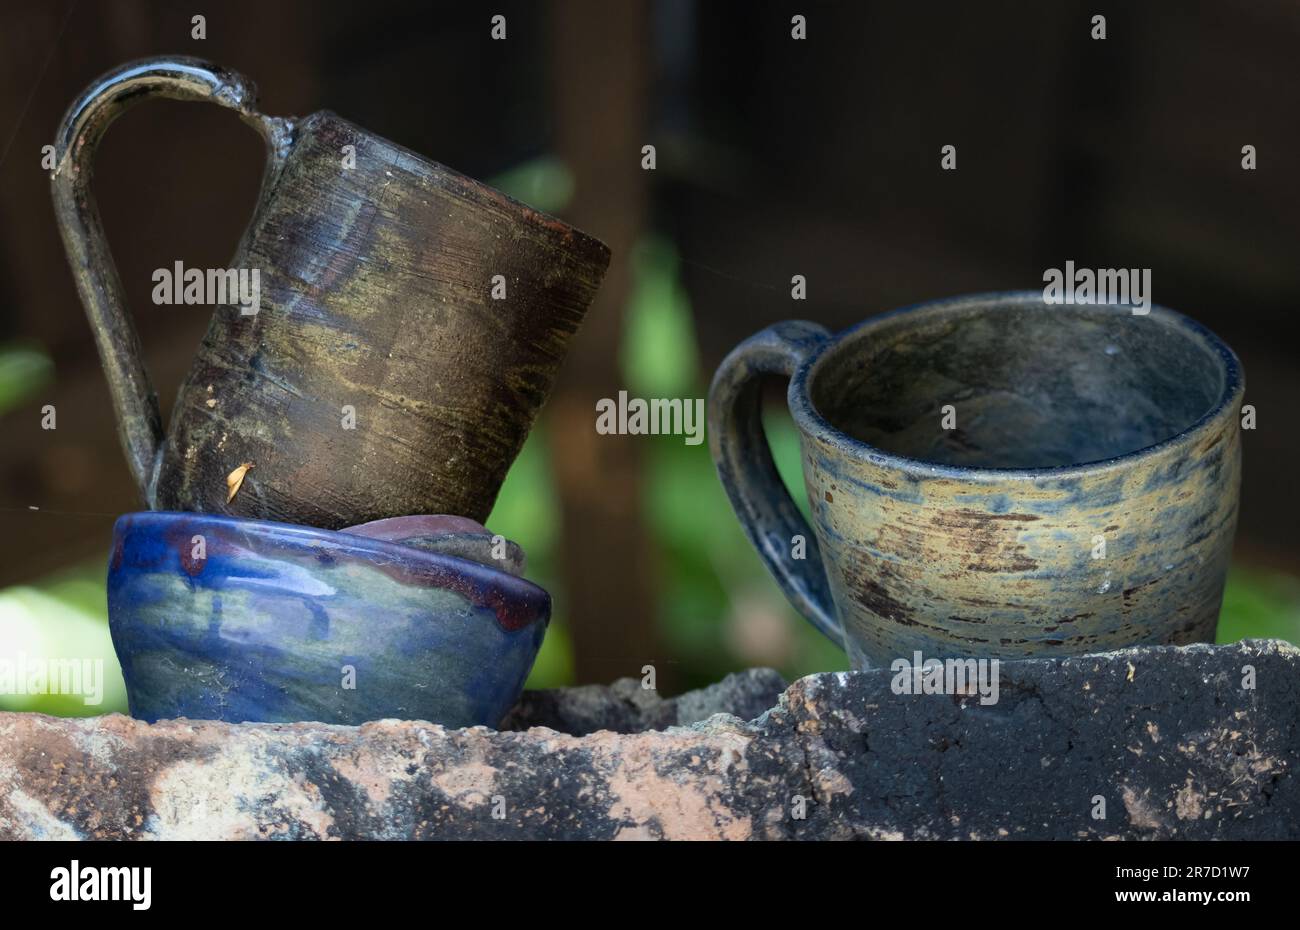 Trois objets de poterie imparfaits faits à la main, deux tasses aux tons naturels et un bol aux tons bleus, prêts à être jetés assis sur une étagère en pierre à l'extérieur Banque D'Images